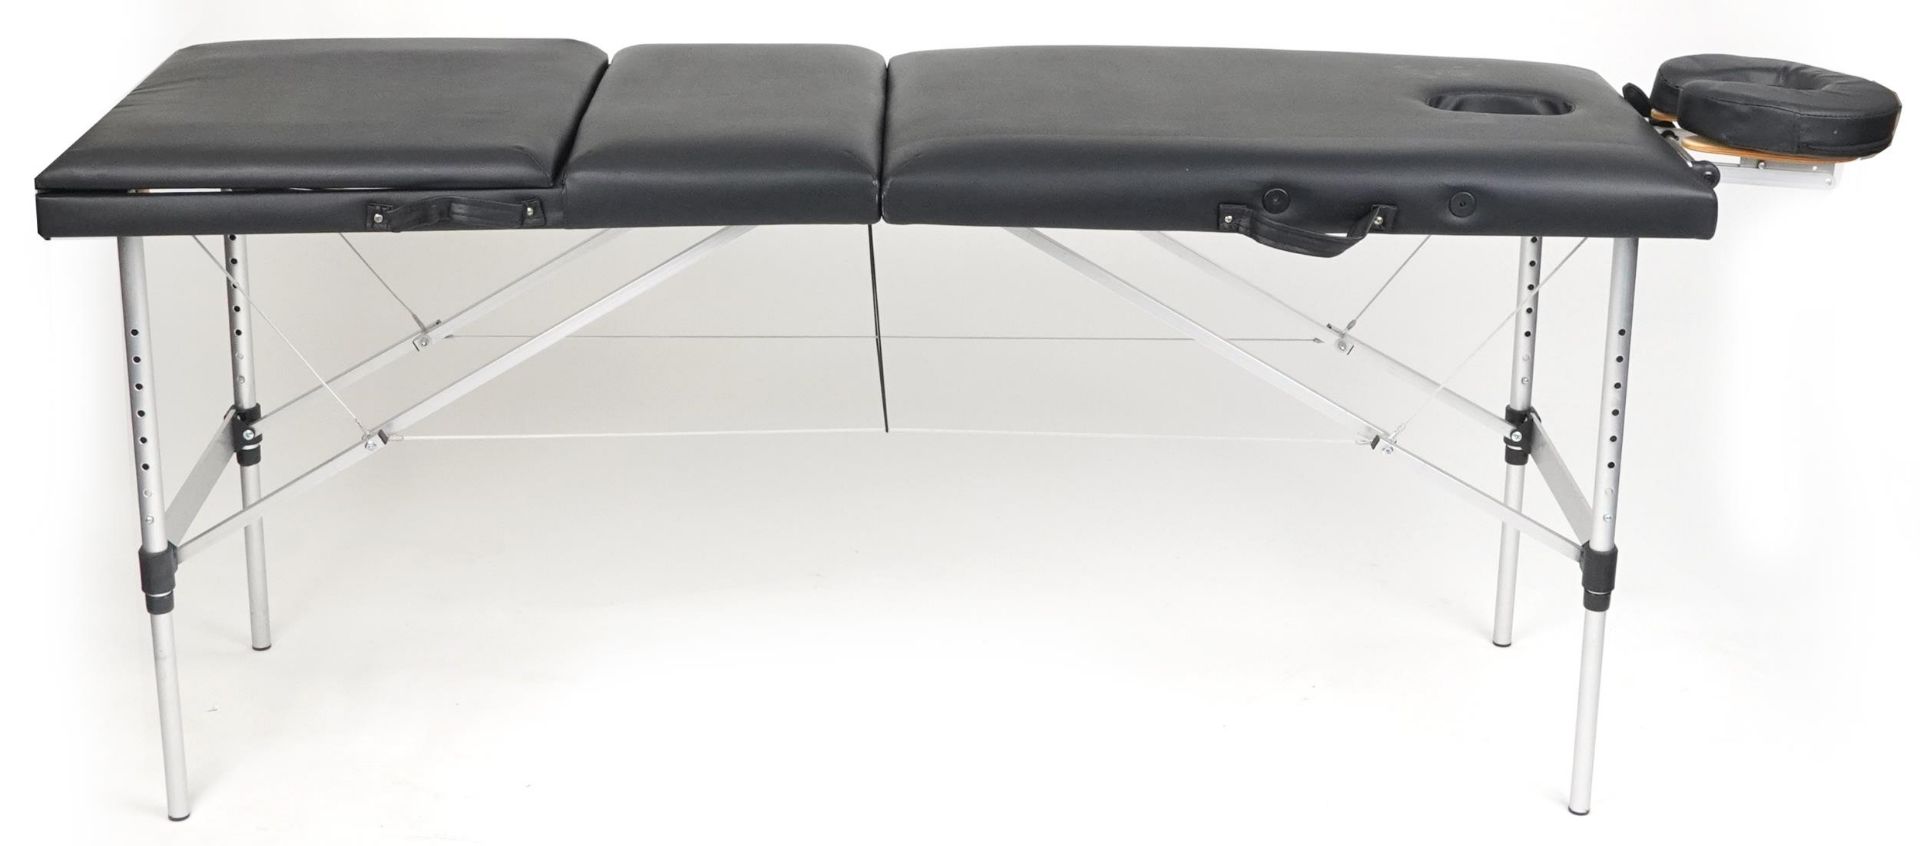 Folding aluminium and black leatherette massage table with protective bag, 83cm H x 184cm W x 59cm D - Bild 2 aus 6